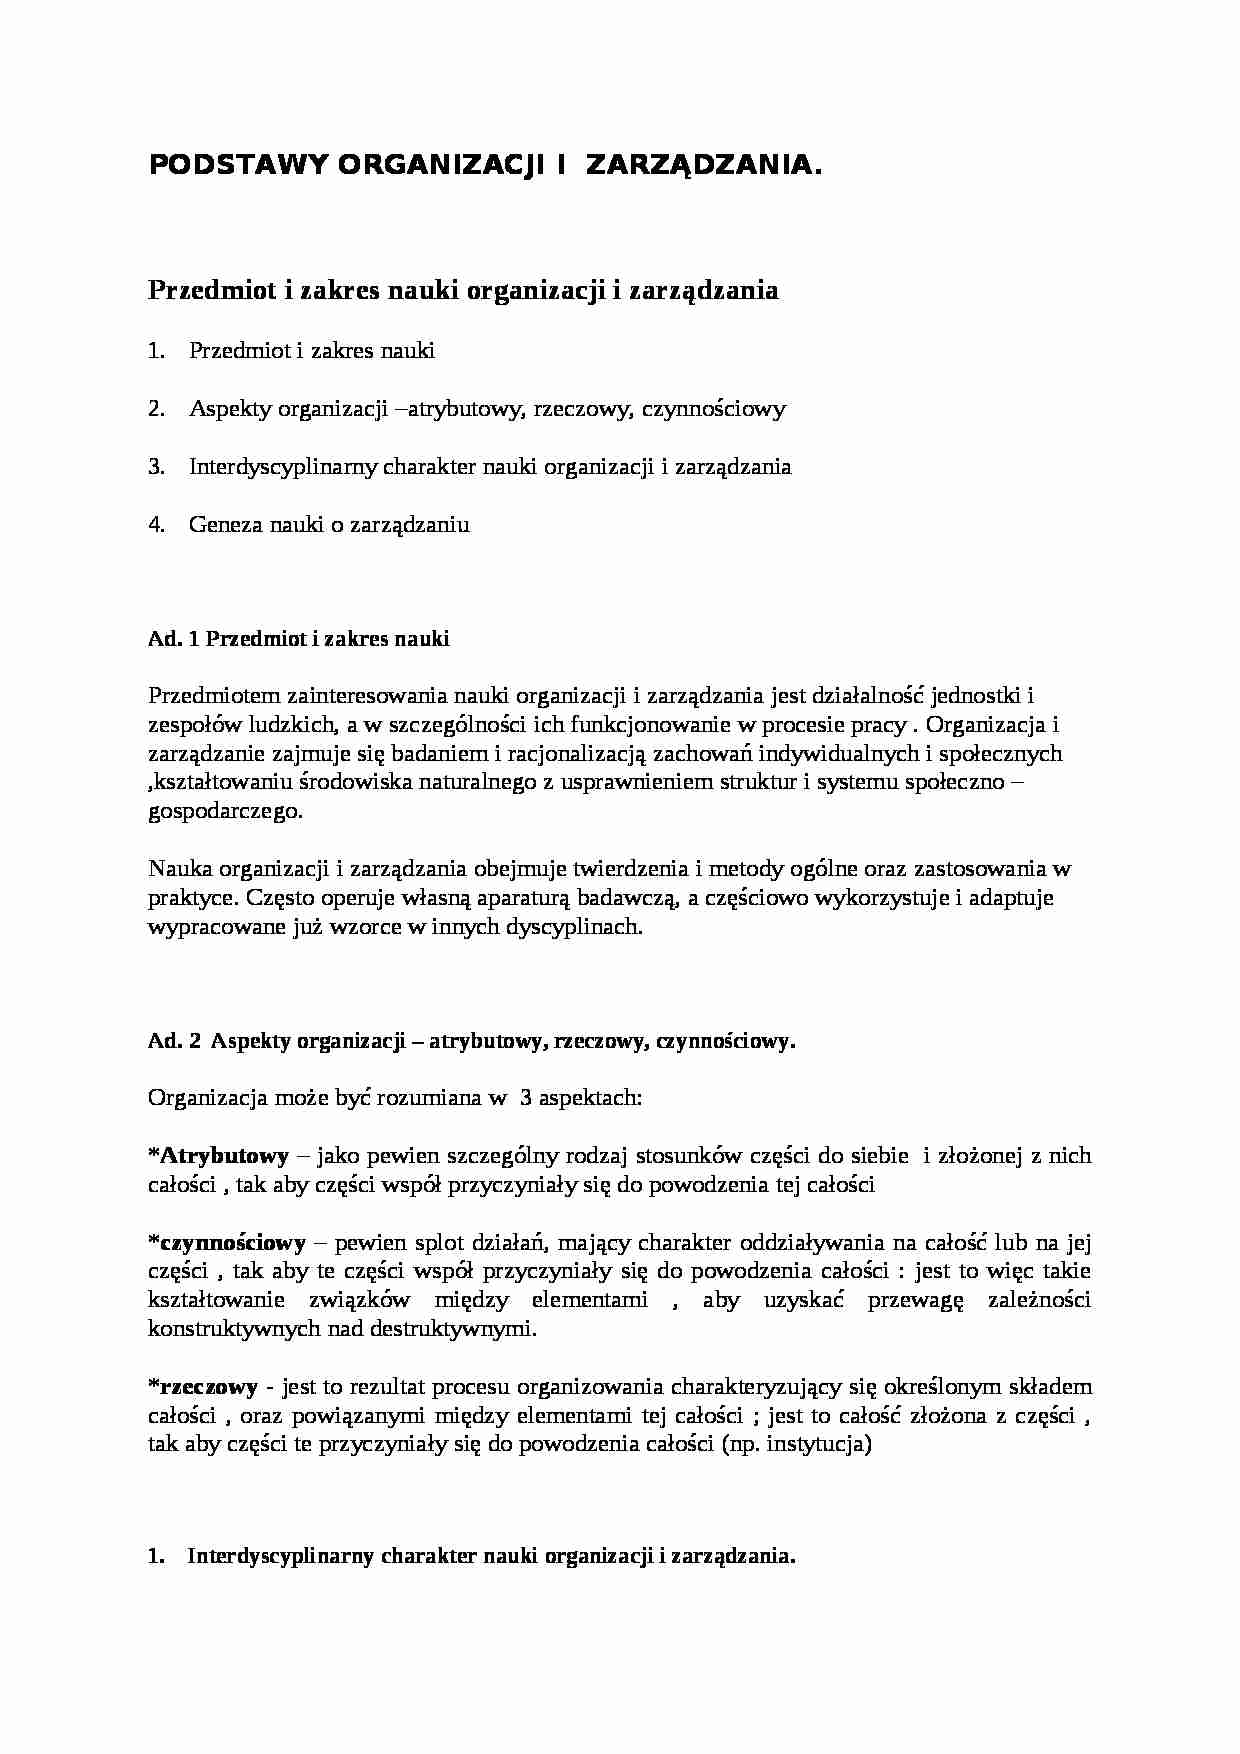 Podstawy organizacji i zarządzania - wykłady - strona 1